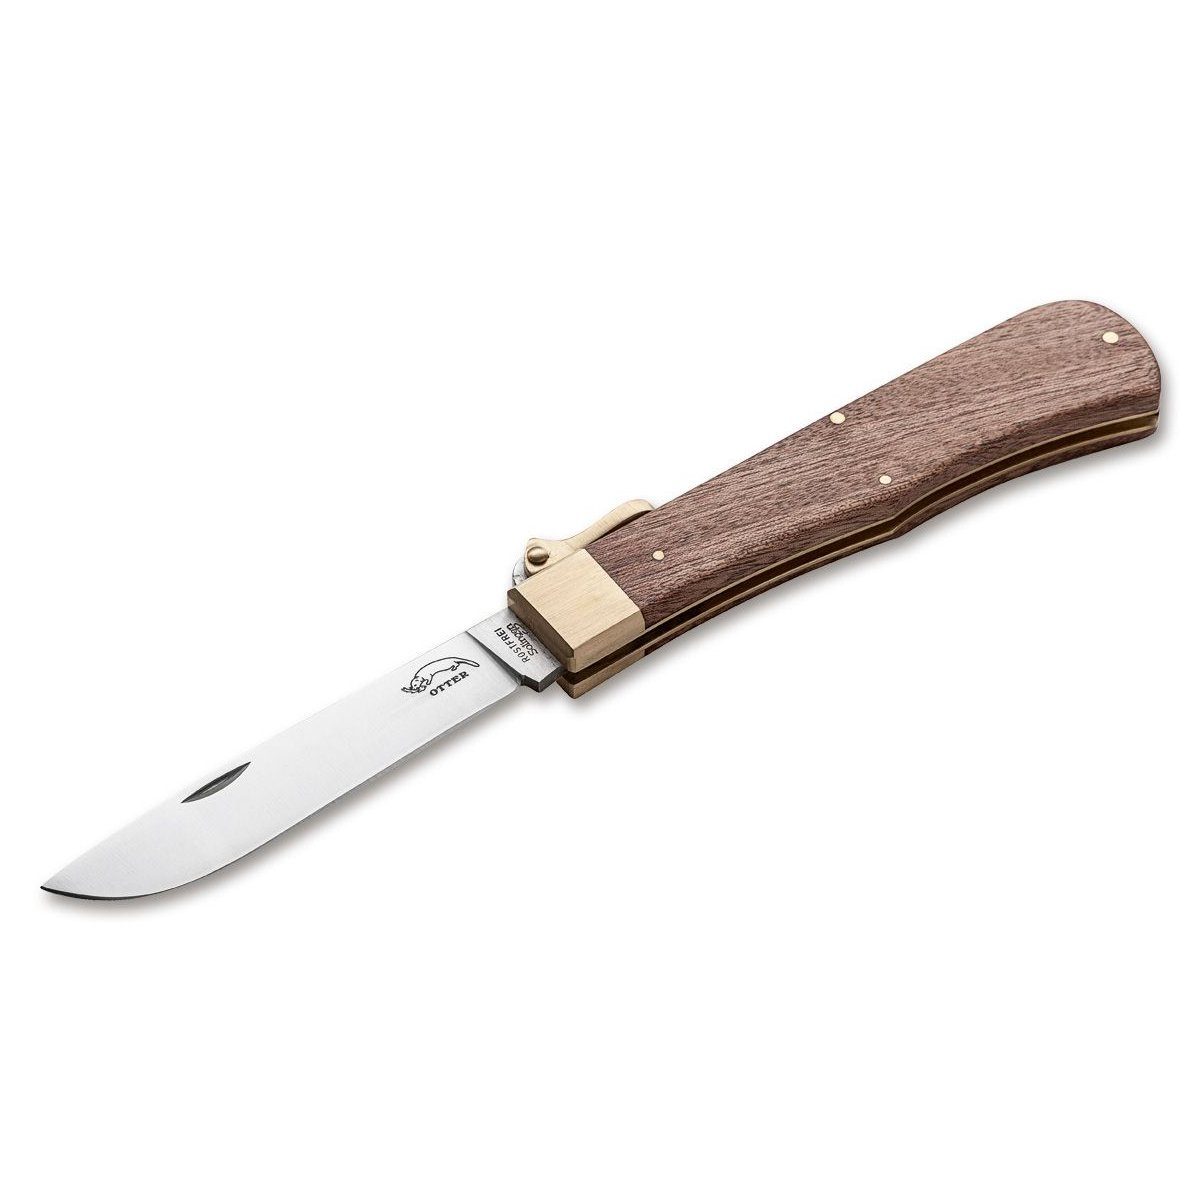 Otter Messer Taschenmesser 05 Sapeli Klappbügel-Taschenmesser, Klinge rostfrei, Backlock | Taschenmesser